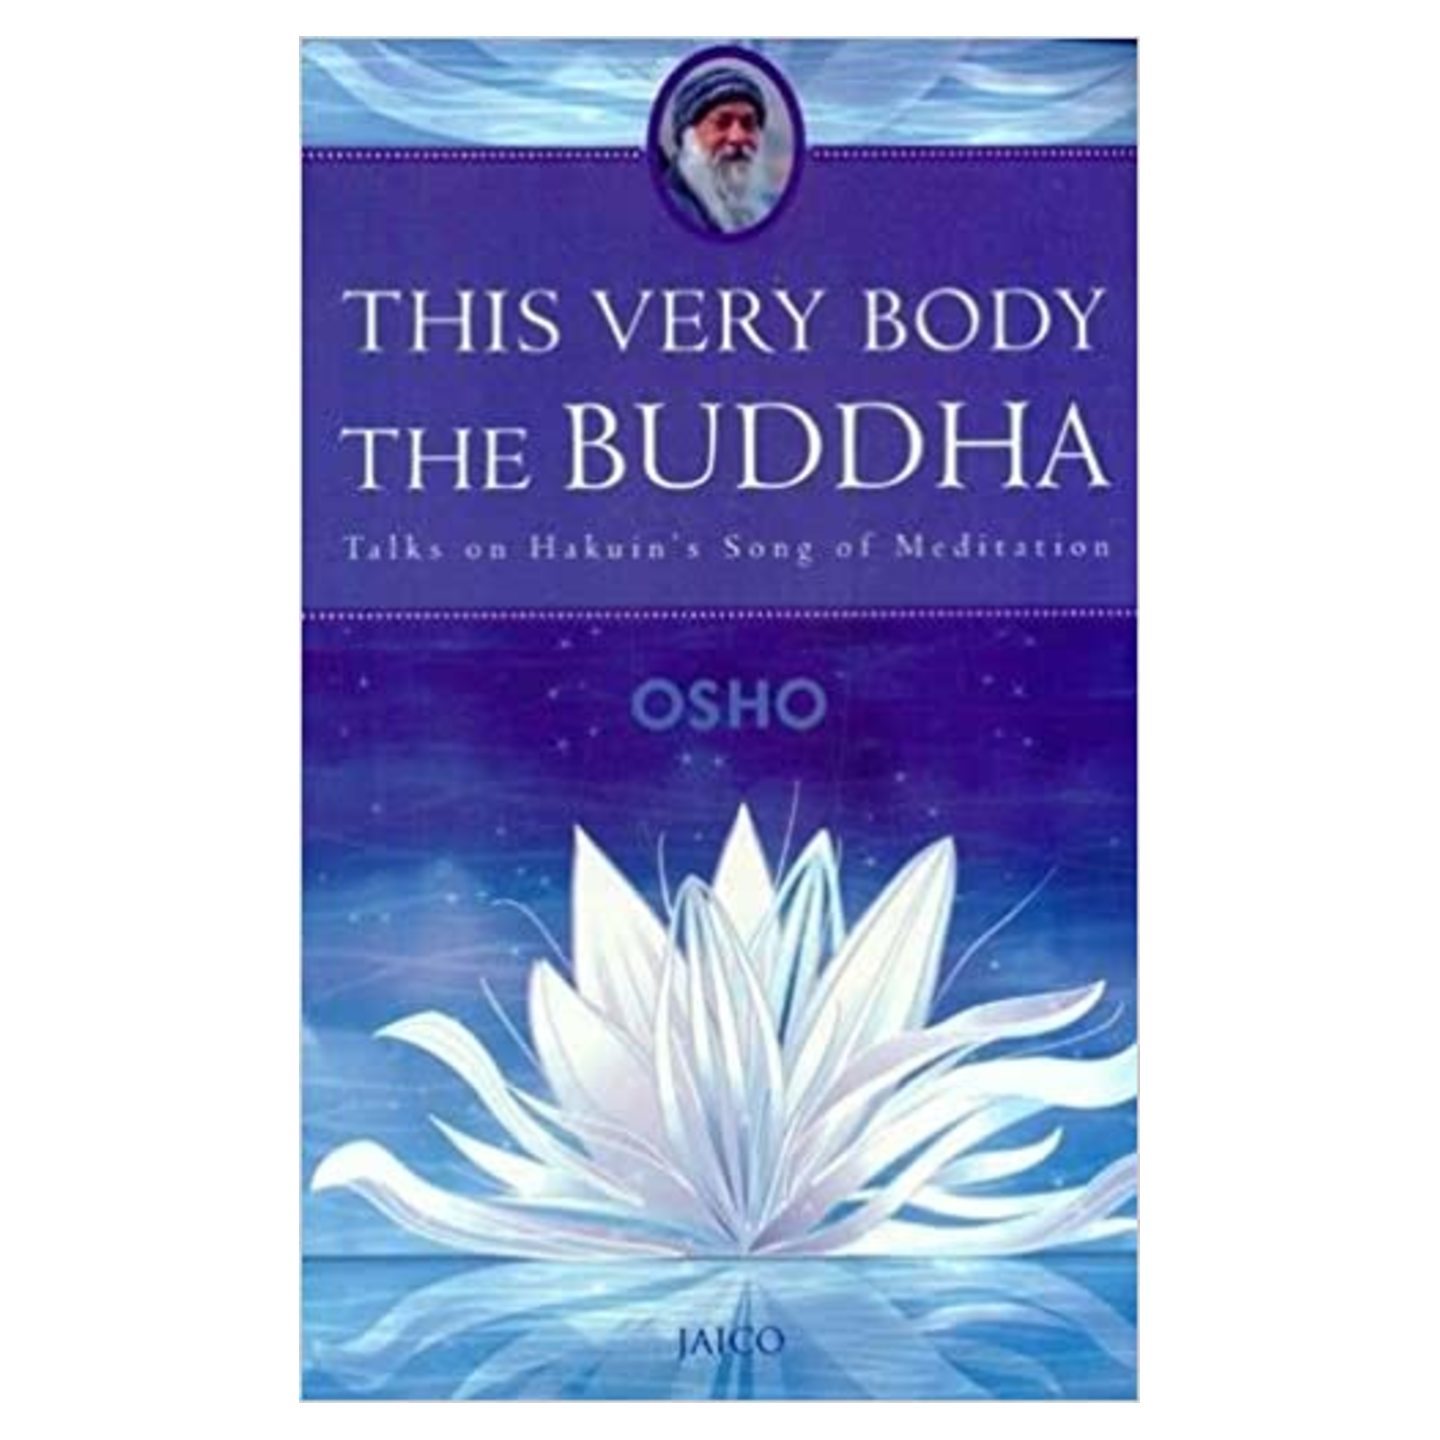 This Very Body The Buddha